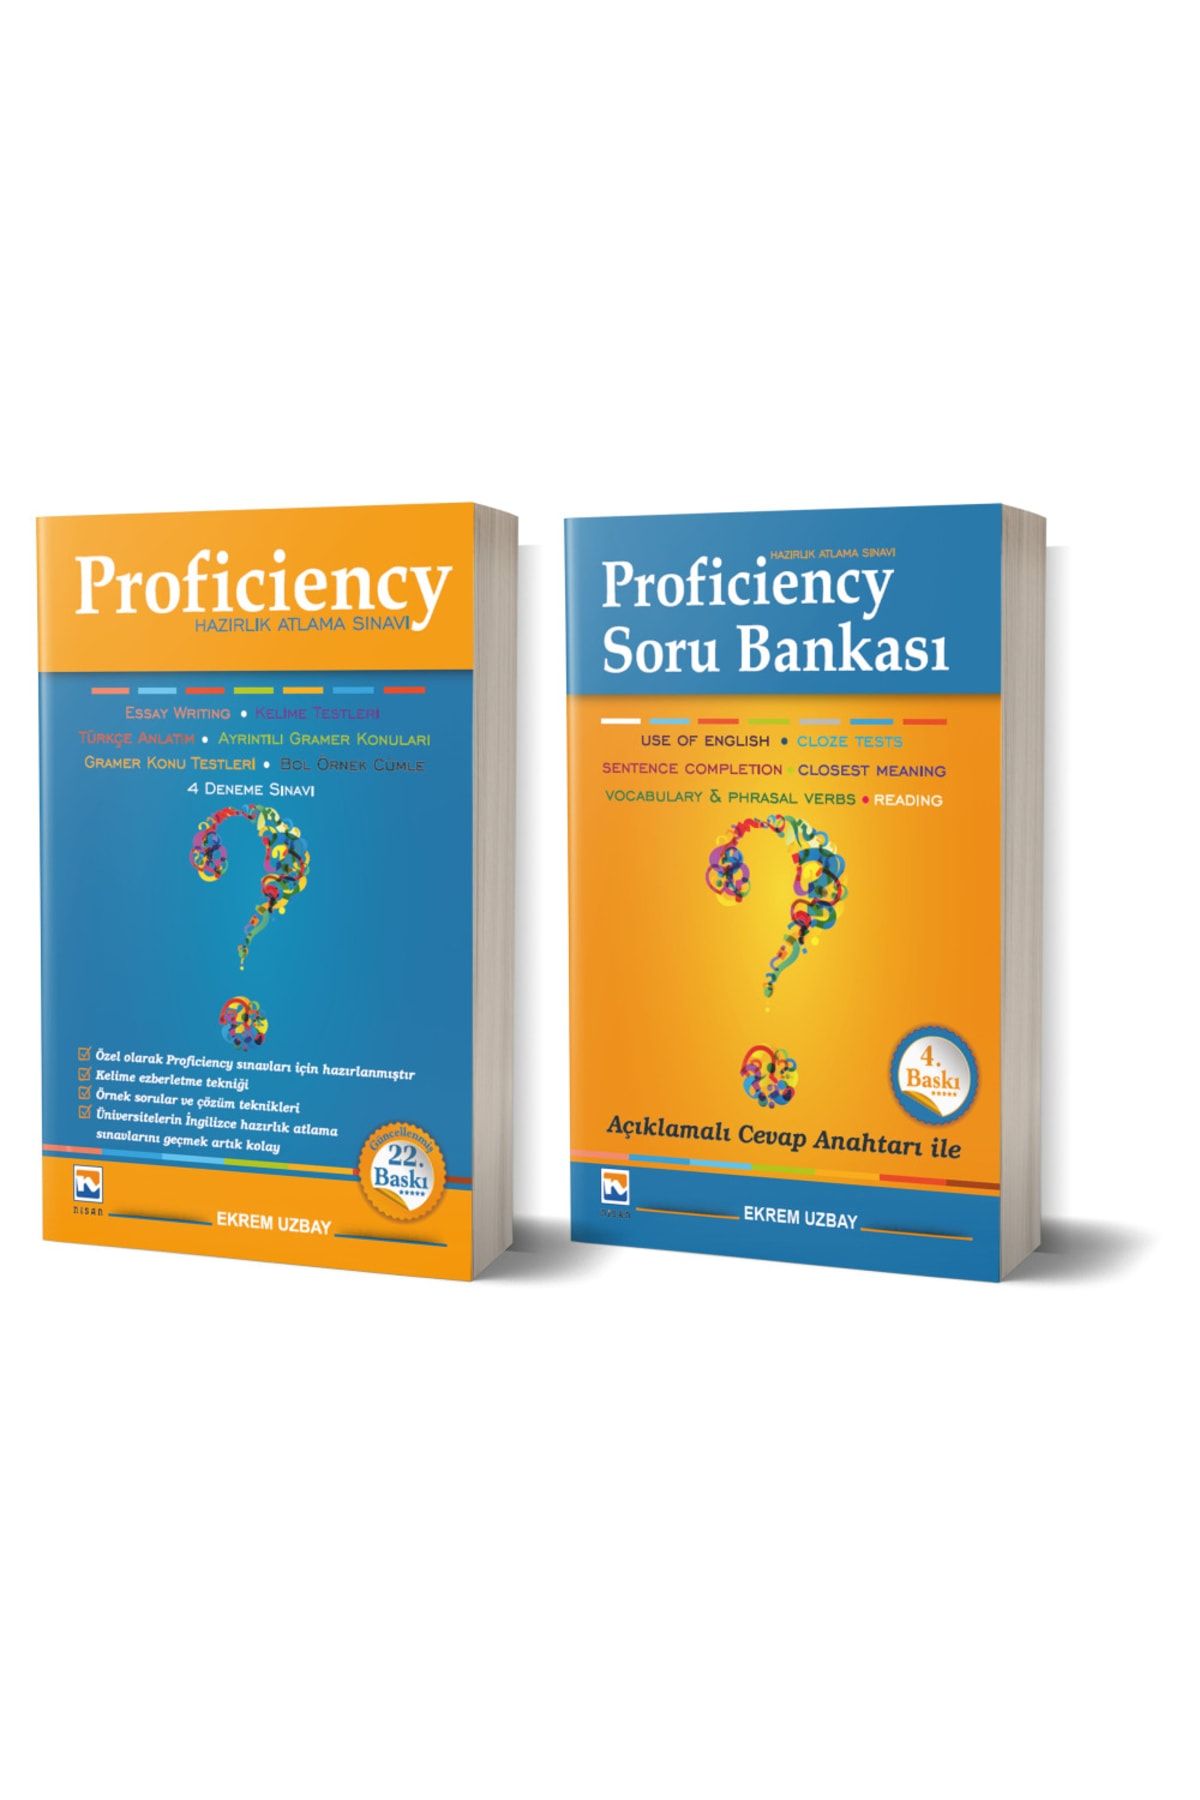 Nisan Kitabevi Proficiency Hazırlık Atlama Sınavı Konu ve Soru Bankası